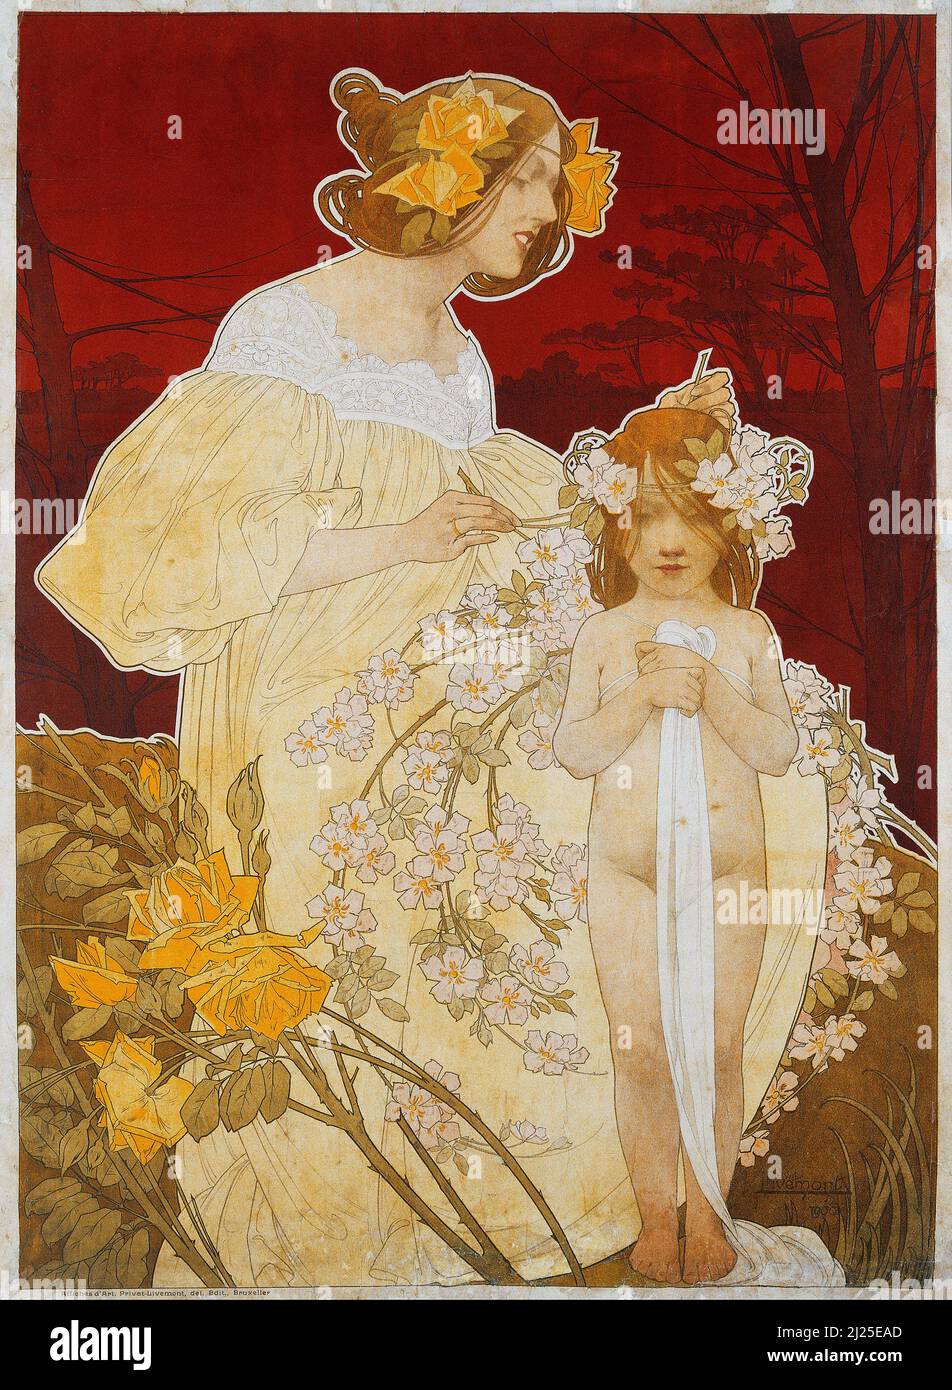 Vintage Art Nouveau by Henri Privat-Livemont - Palais de la Femme. Exposition de 1900 (1900) - Old advertisement poster. Stock Photo